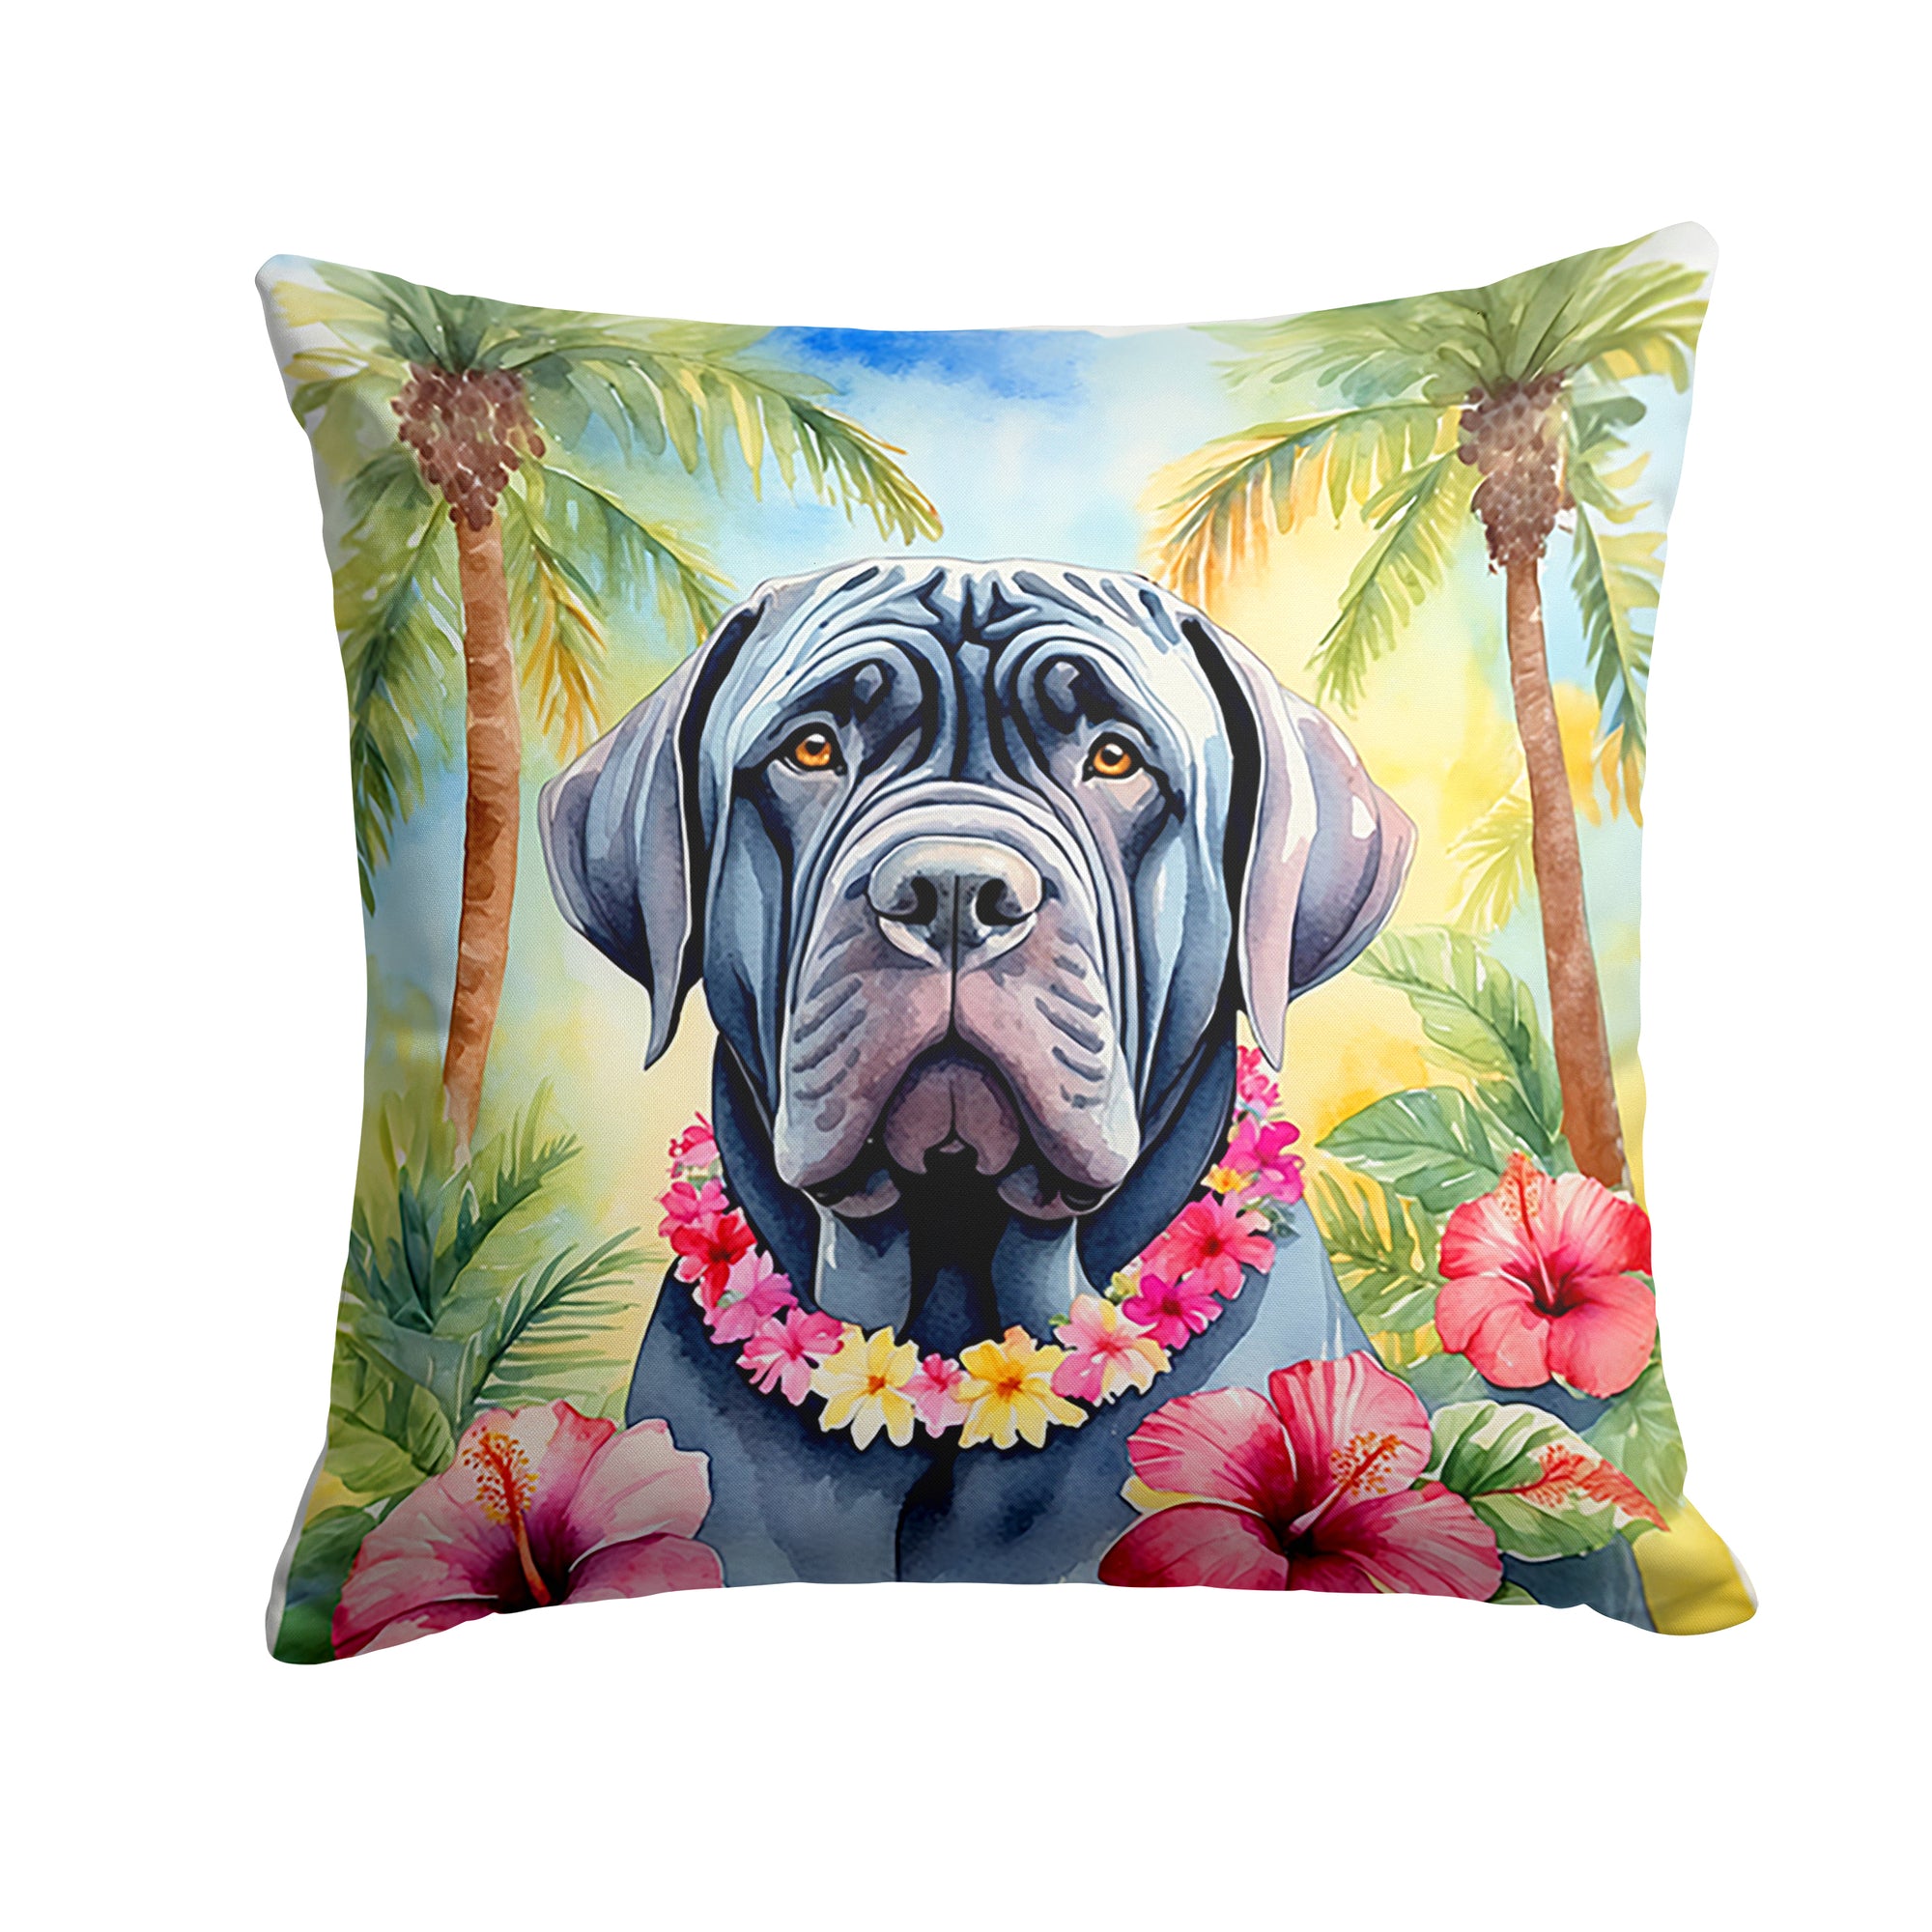 Buy this Neapolitan Mastiff Luau Throw Pillow